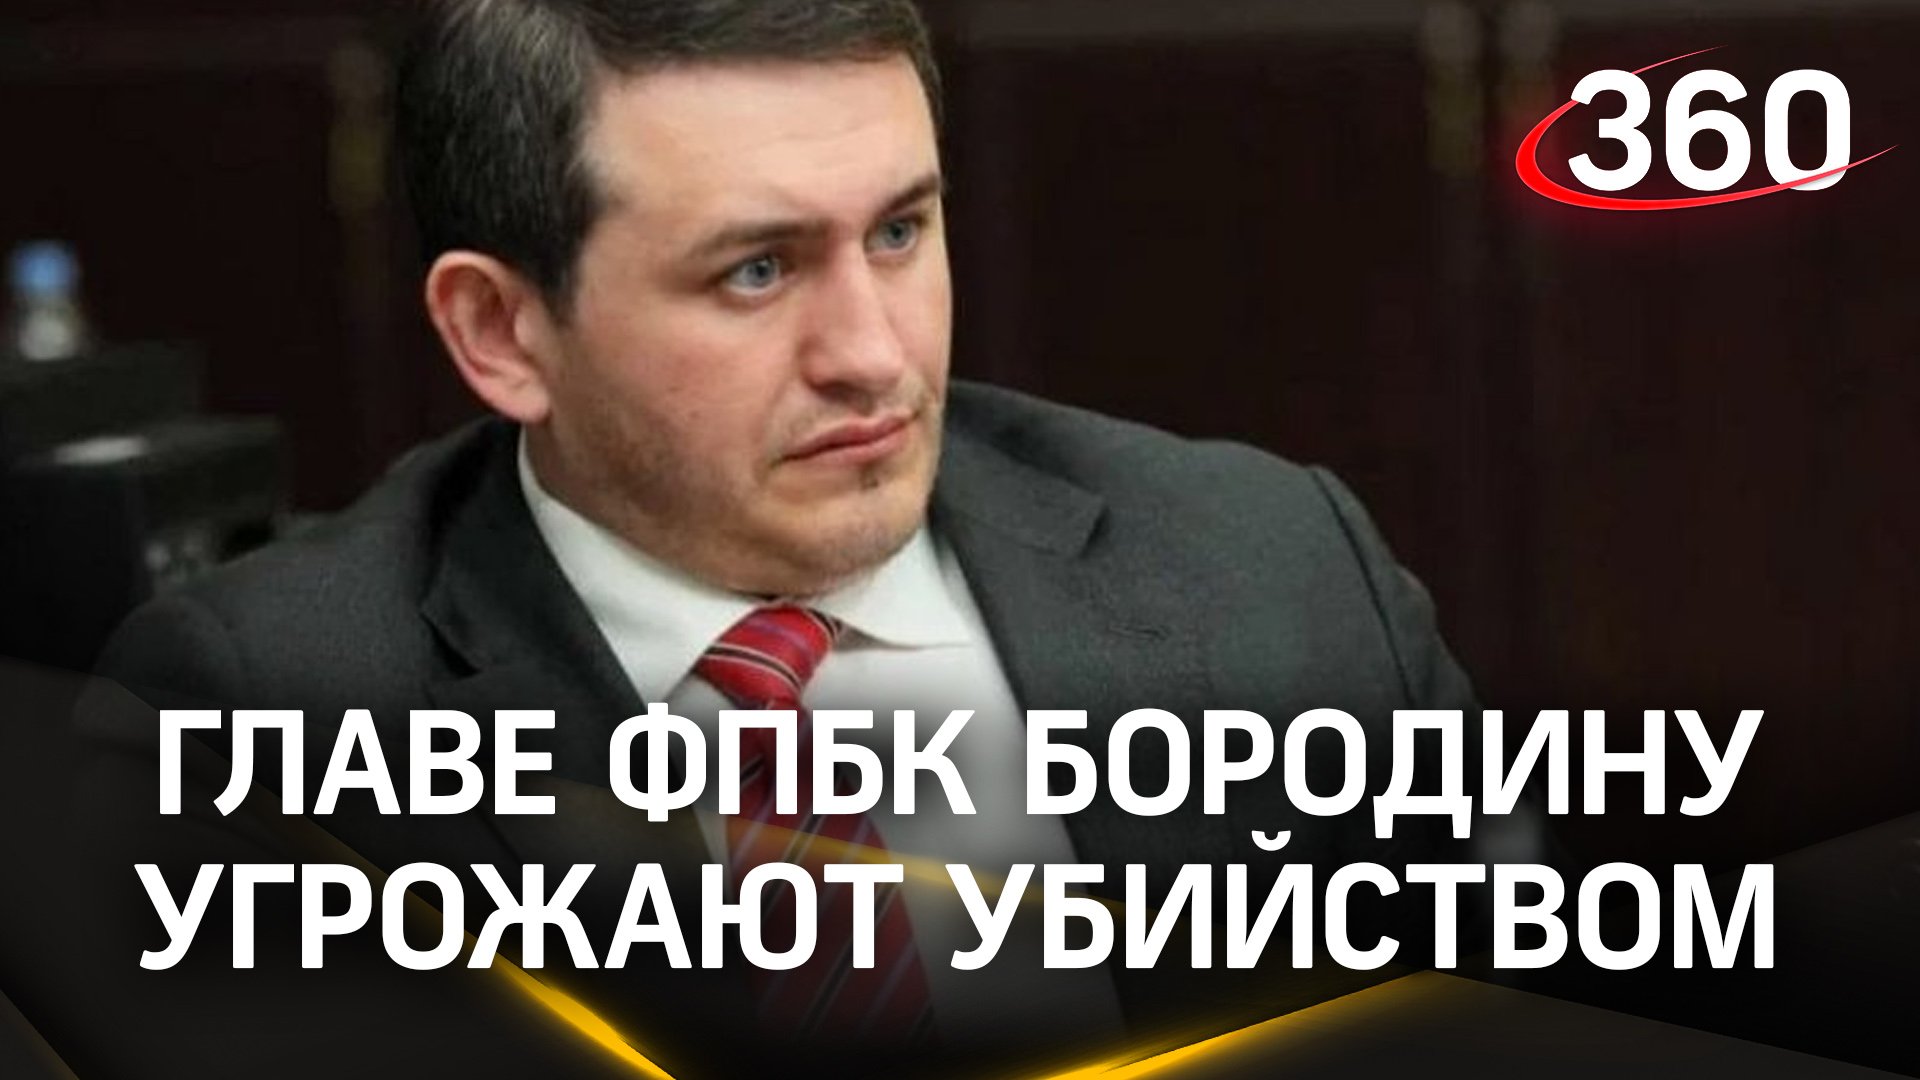 «Таких, как ты, я положил тысячами» - антикоррупционеру Виталию Бородину угрожают расправой